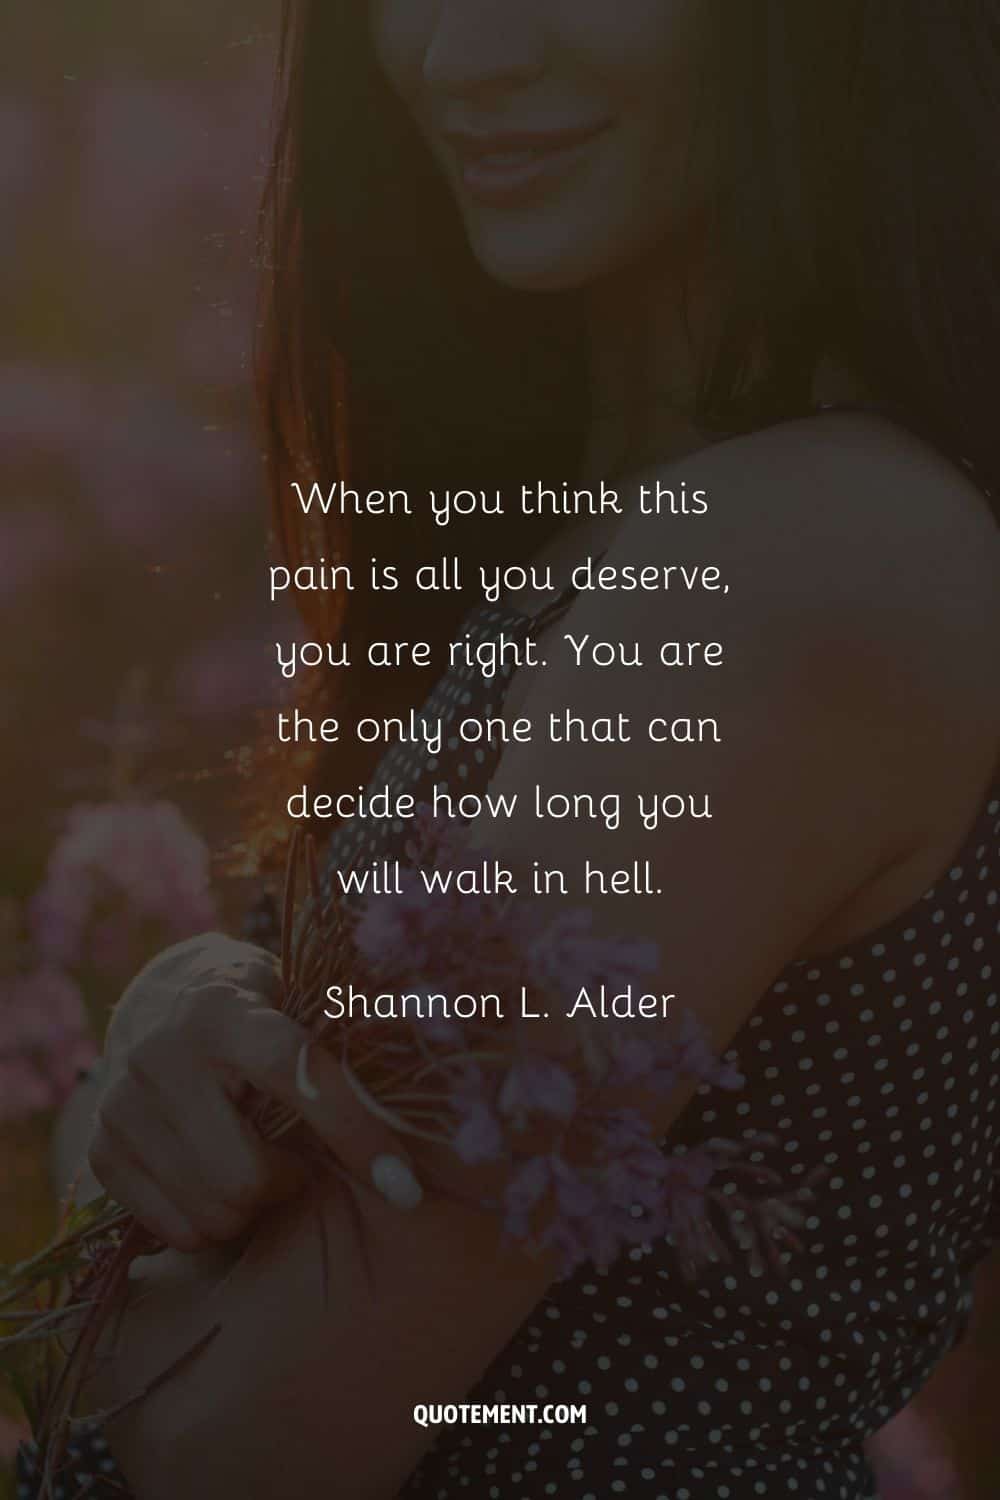 "Cuando piensas que este dolor es todo lo que mereces, tienes razón. Tú eres el único que puede decidir cuánto tiempo caminarás en el infierno". - Shannon L. Alder